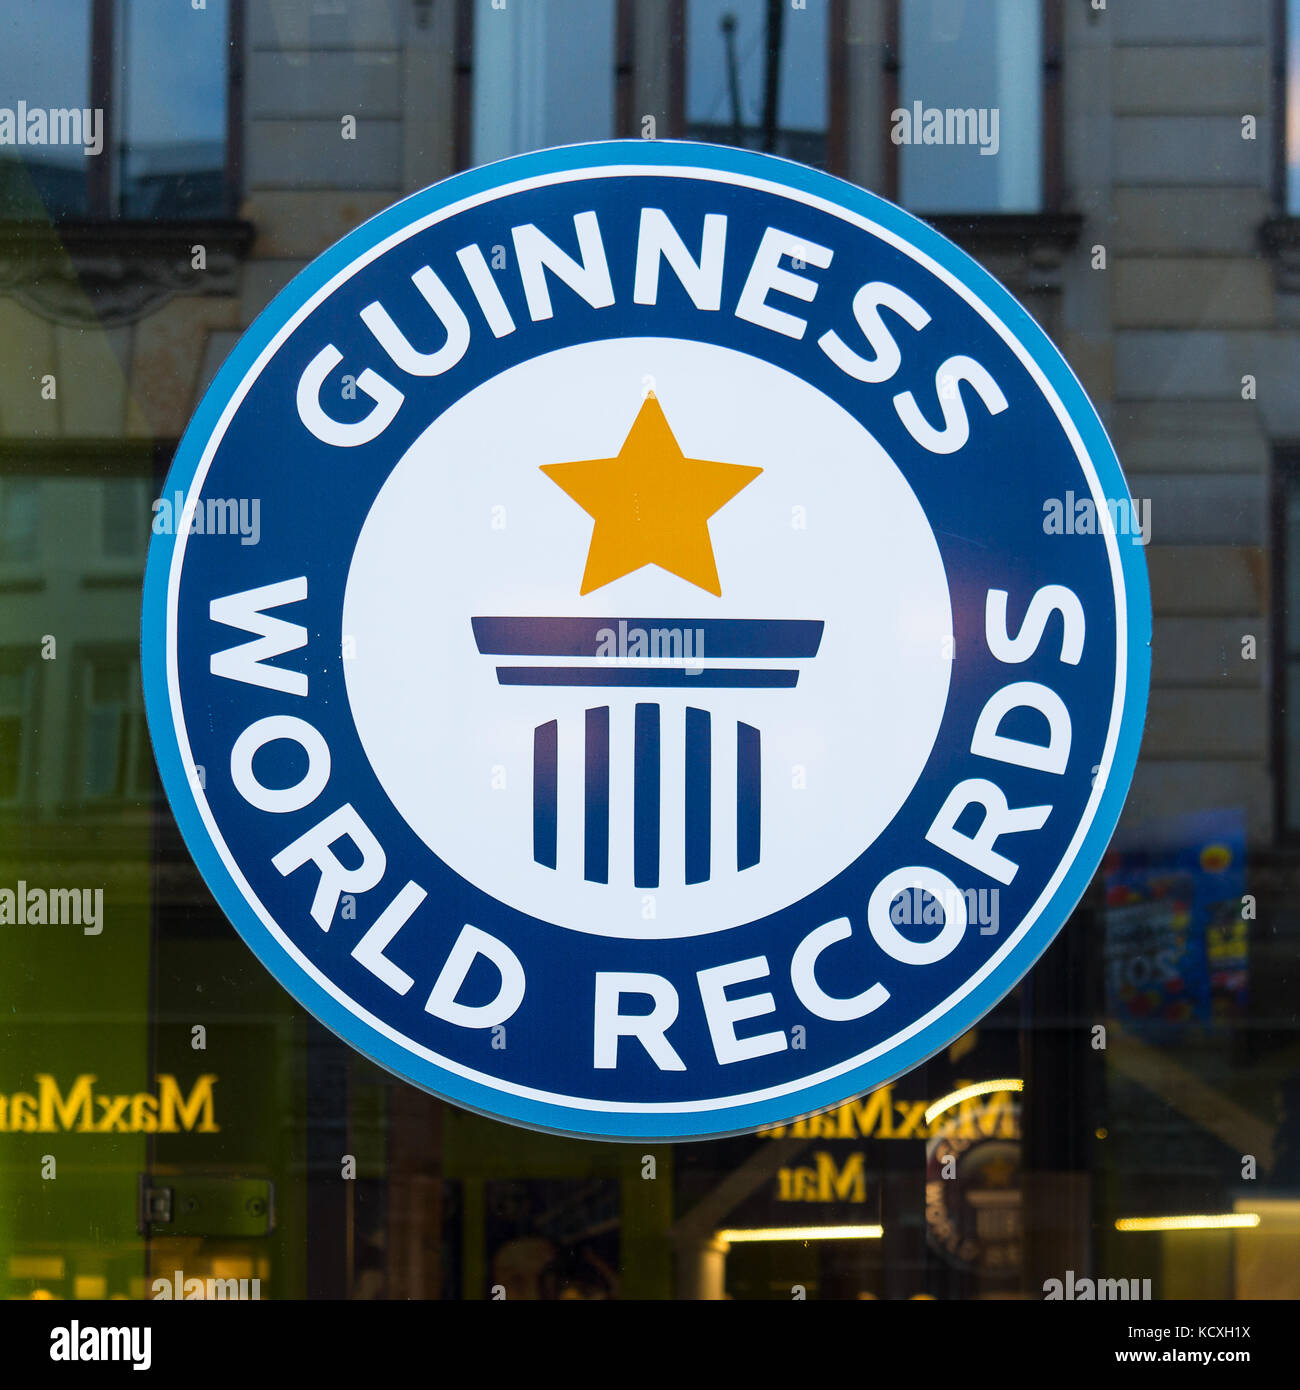 Guinness world record segno, riflessioni in una finestra, Copenaghen, Danimarca, 21 settembre 2107 Foto Stock